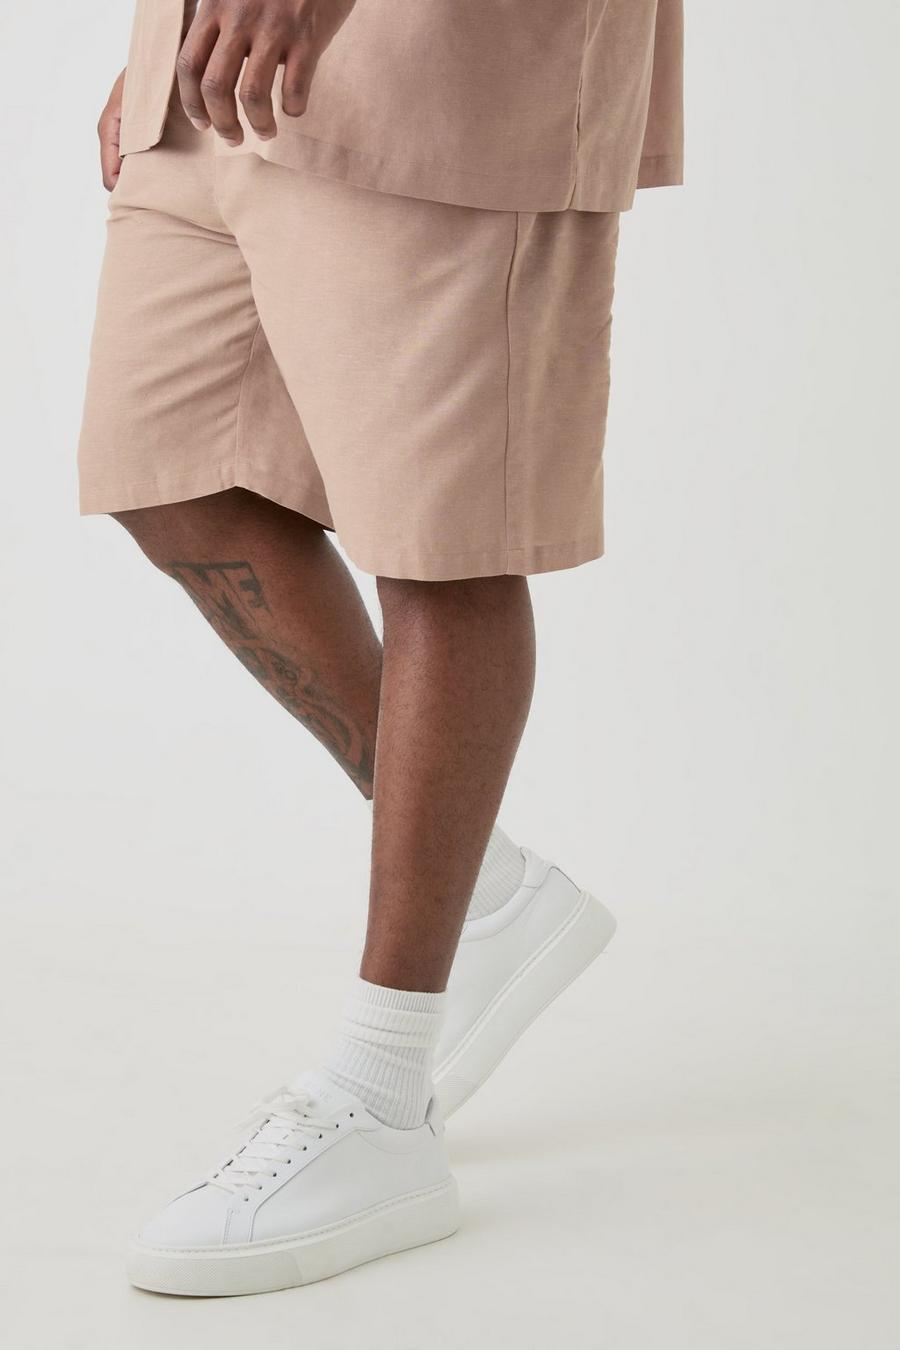 Pantalones cortos Plus de lino con cintura elástica en color topo, Taupe image number 1